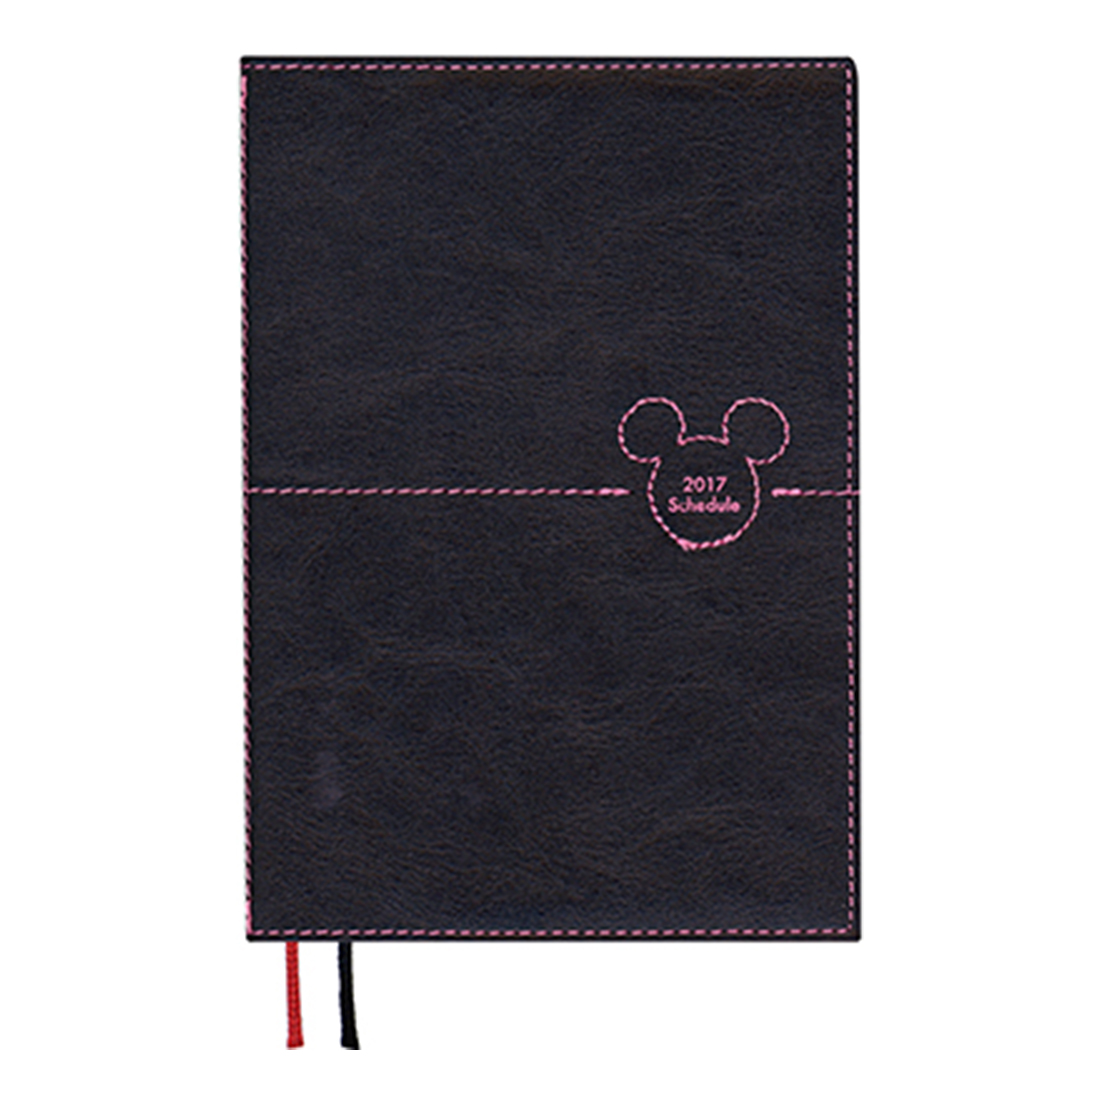 17年1月始まり ディズニー Disney Diary ステッチワークミッキー 見開き1週間 A6 ブラック E6076 21年版手帳 手帳 ダイアリー のダイゴーオンラインショップ